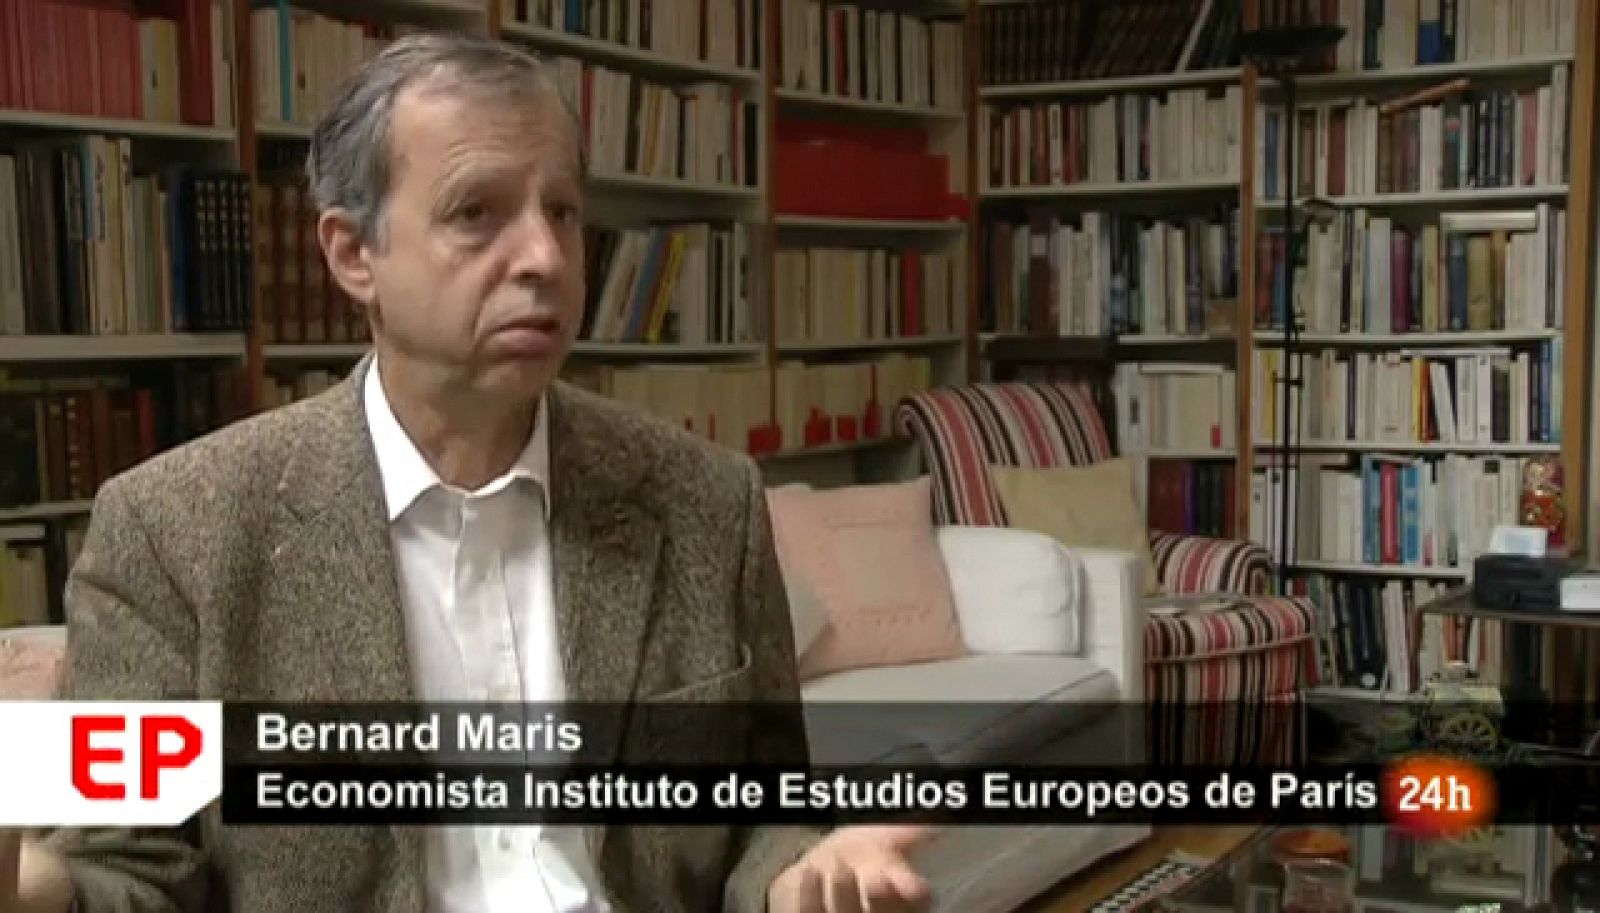 Bernard Maris en una instantánea del reportaje de En Portada "El desencanto de Europa"